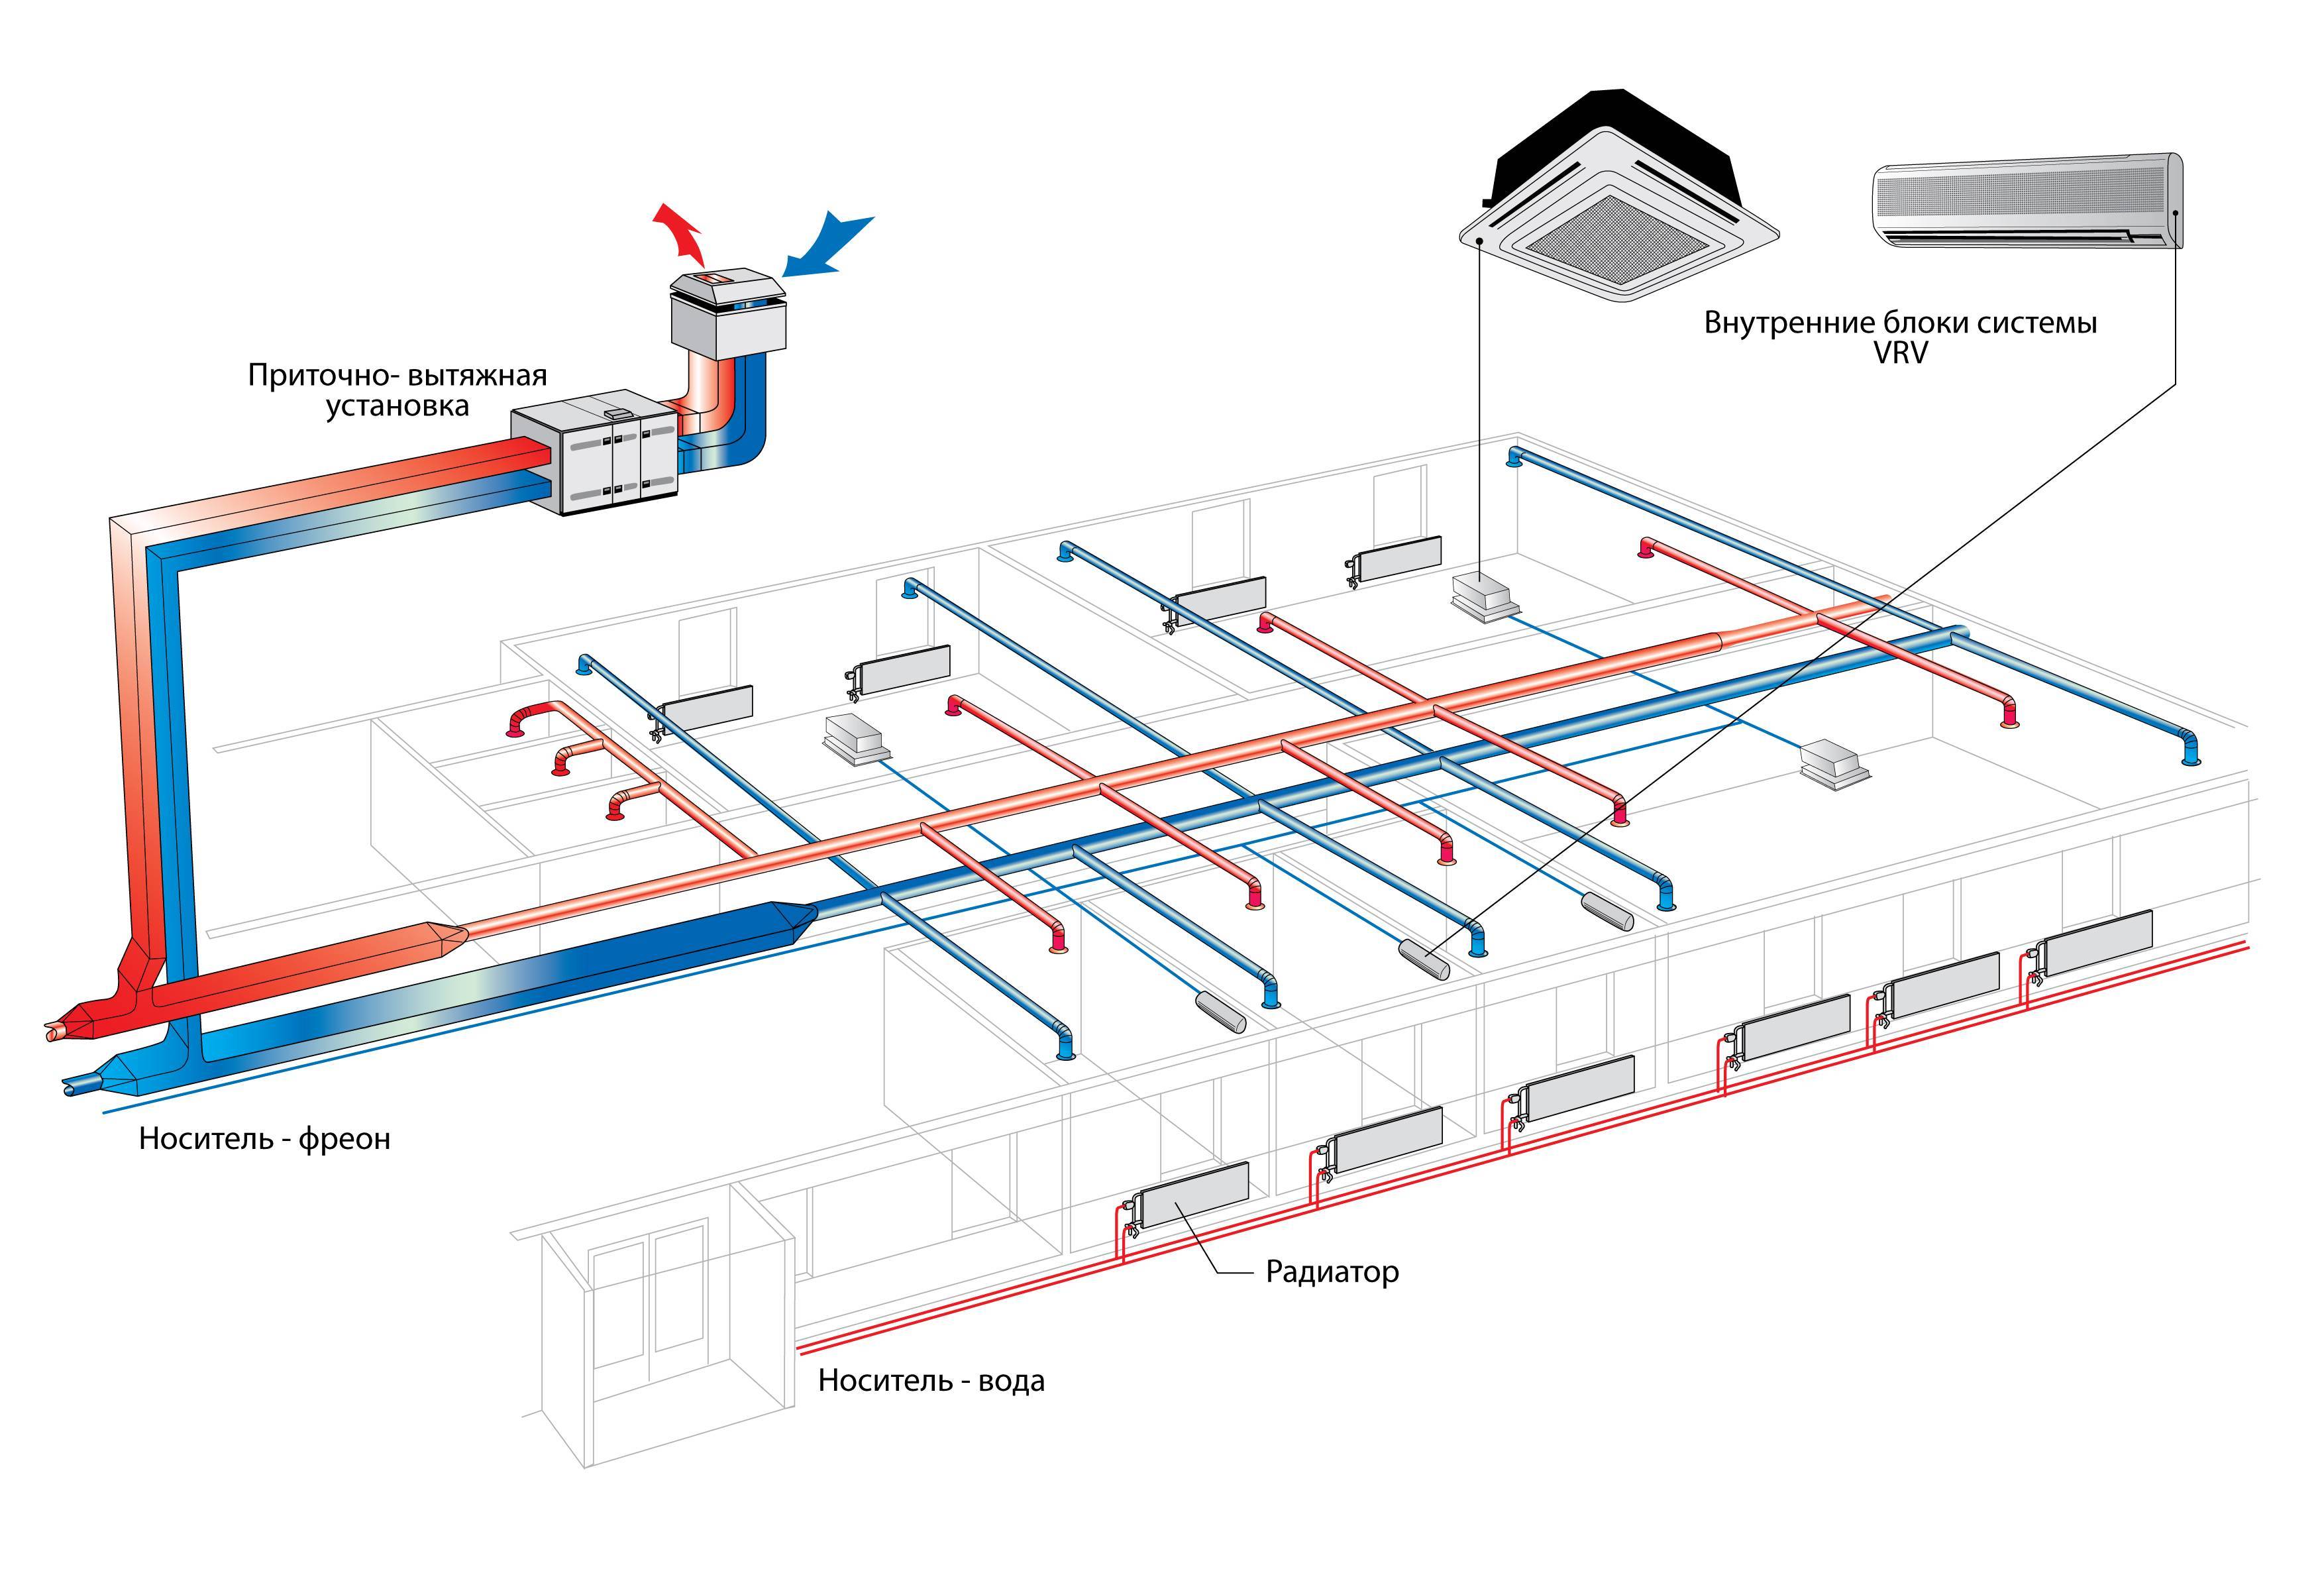 Гост р 59972-2021 системы вентиляции и кондиционирования воздуха общественных зданий. технические требования